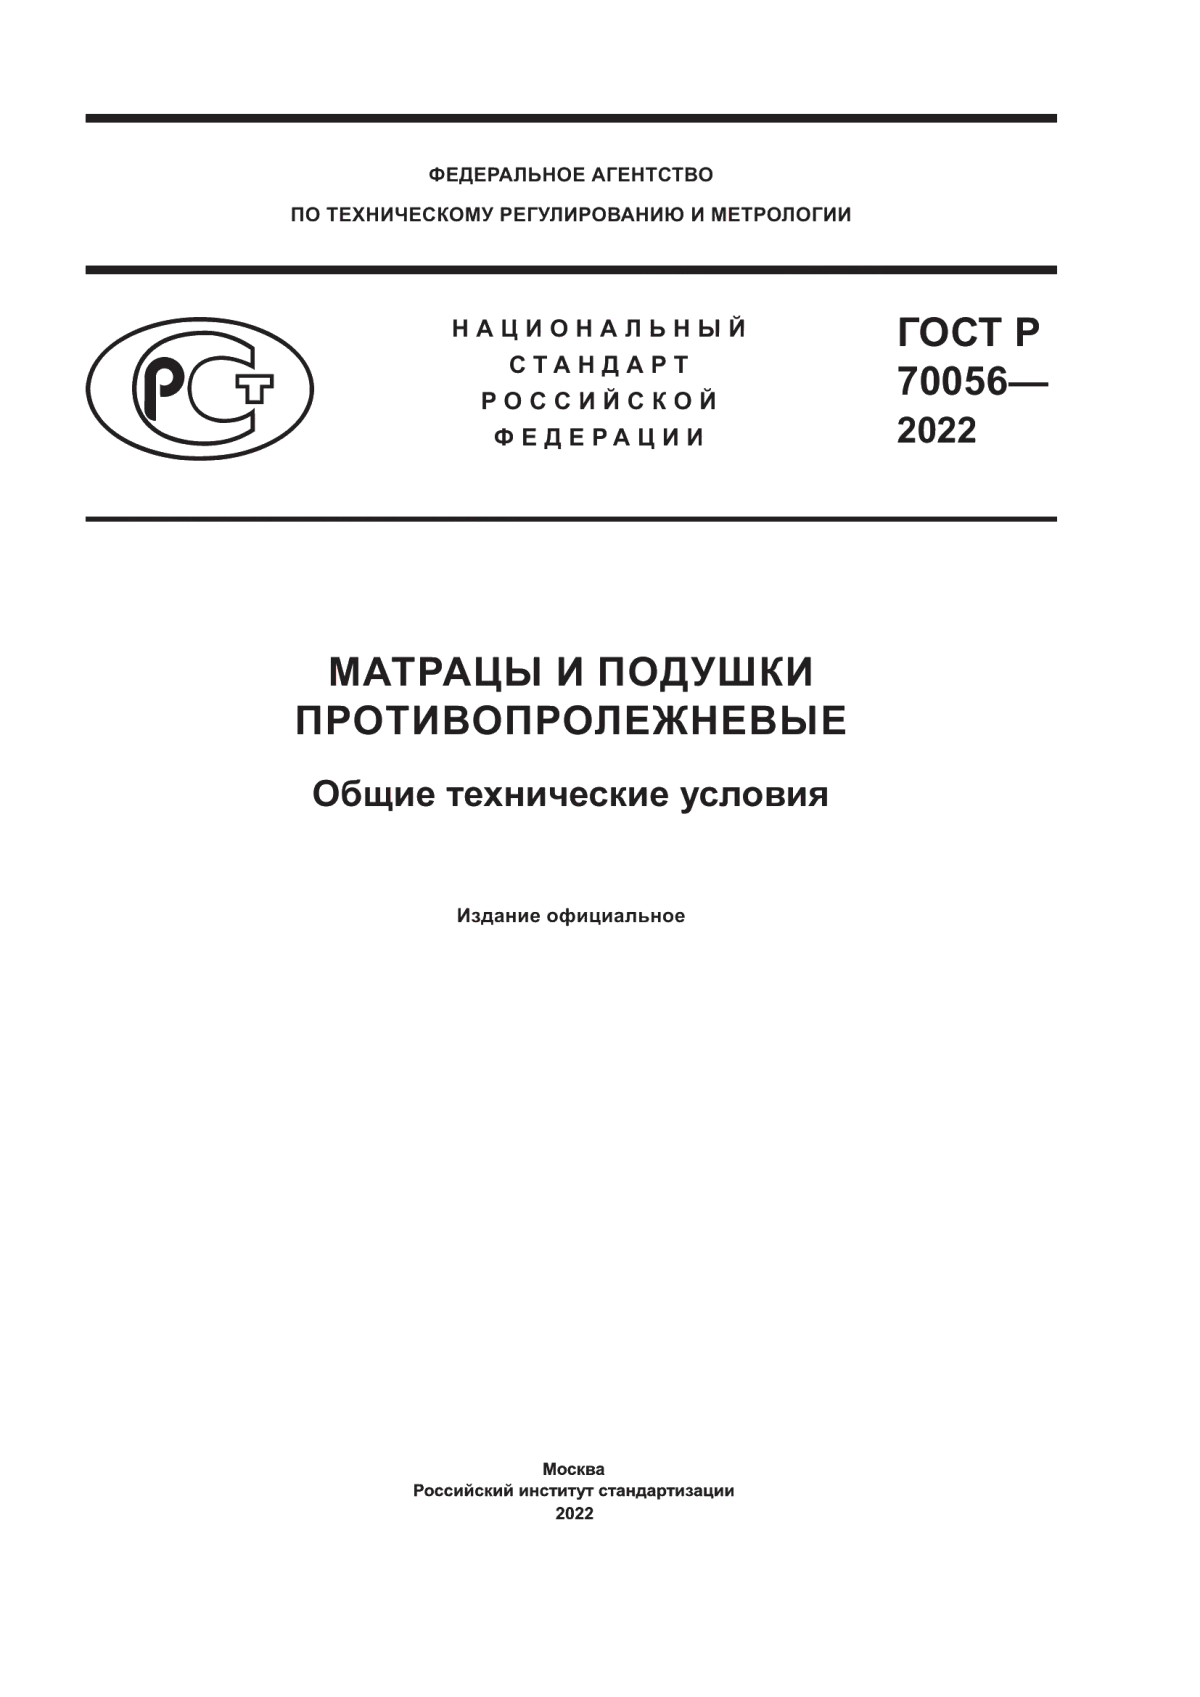 ГОСТ Р 70056-2022 Матрацы и подушки противопролежневые. Общие технические условия